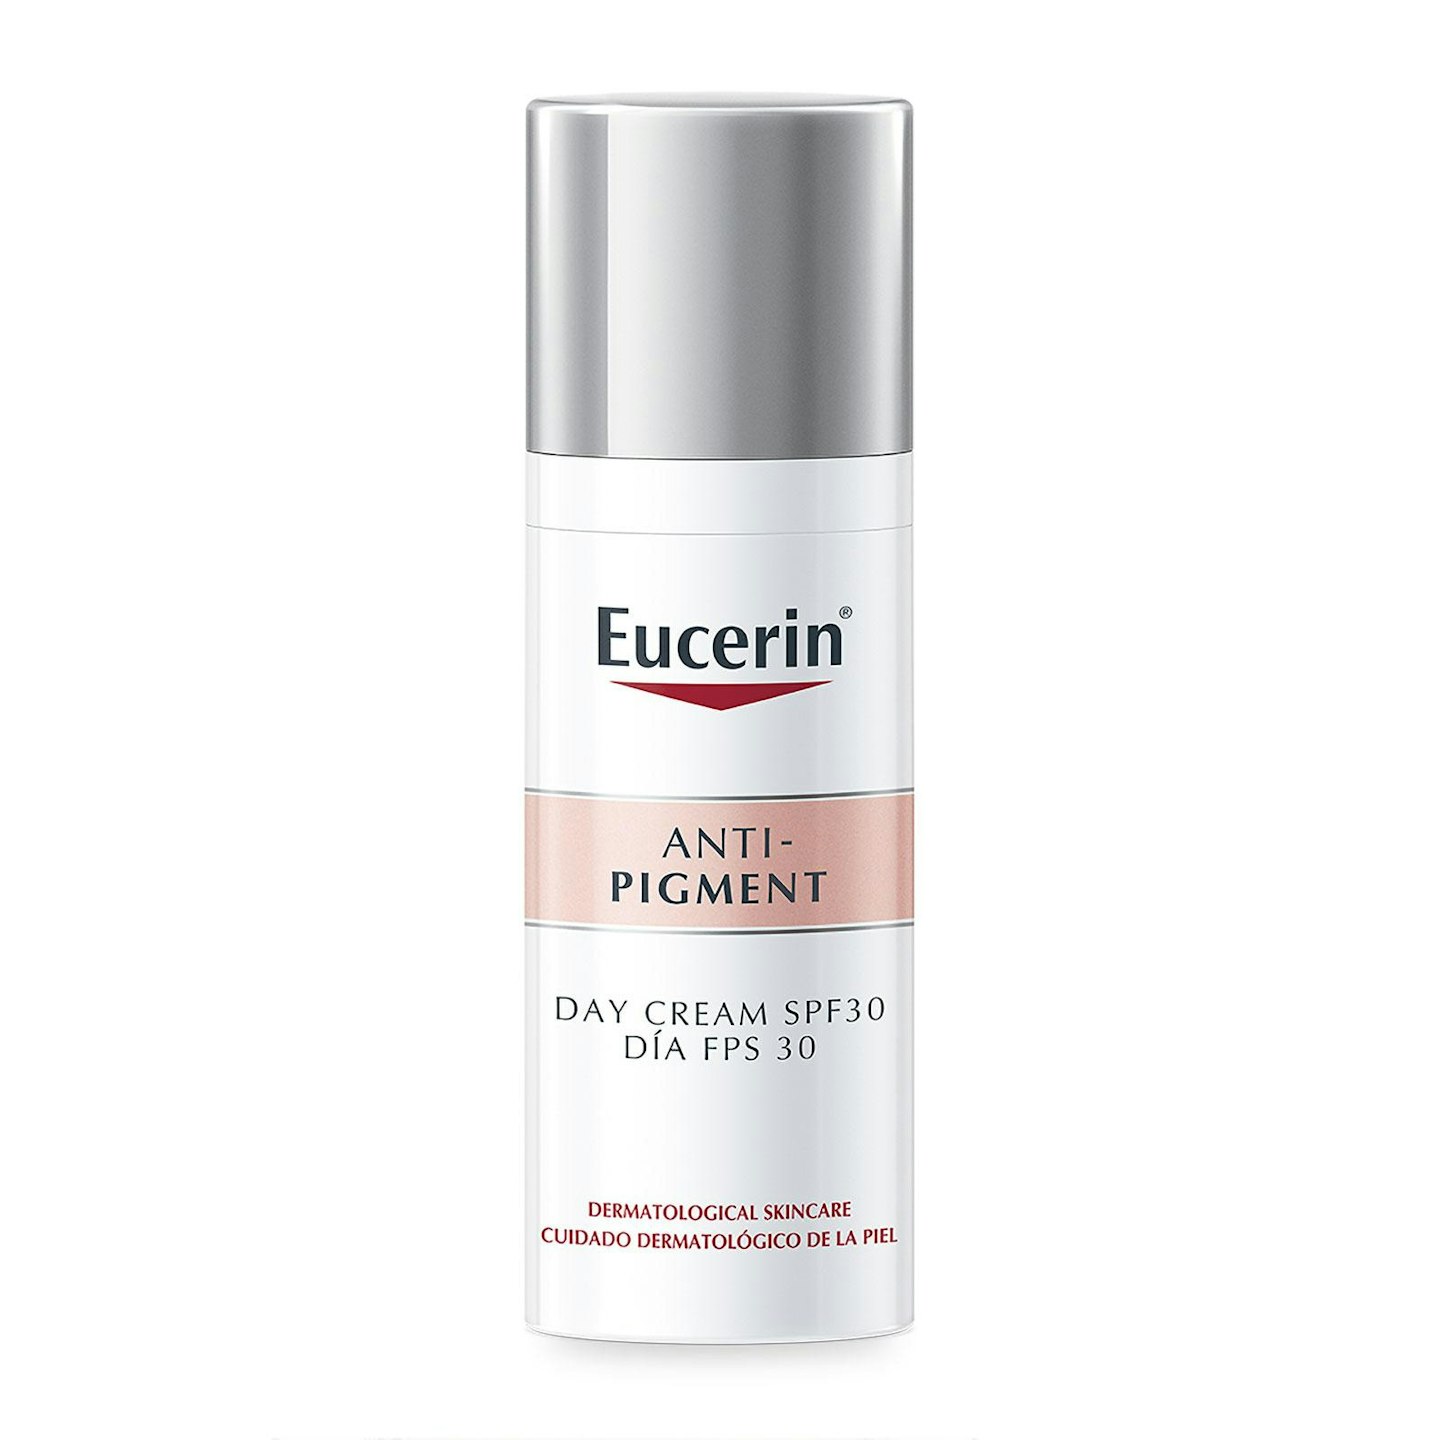 Eucerin Anti-Pigment Day Cream